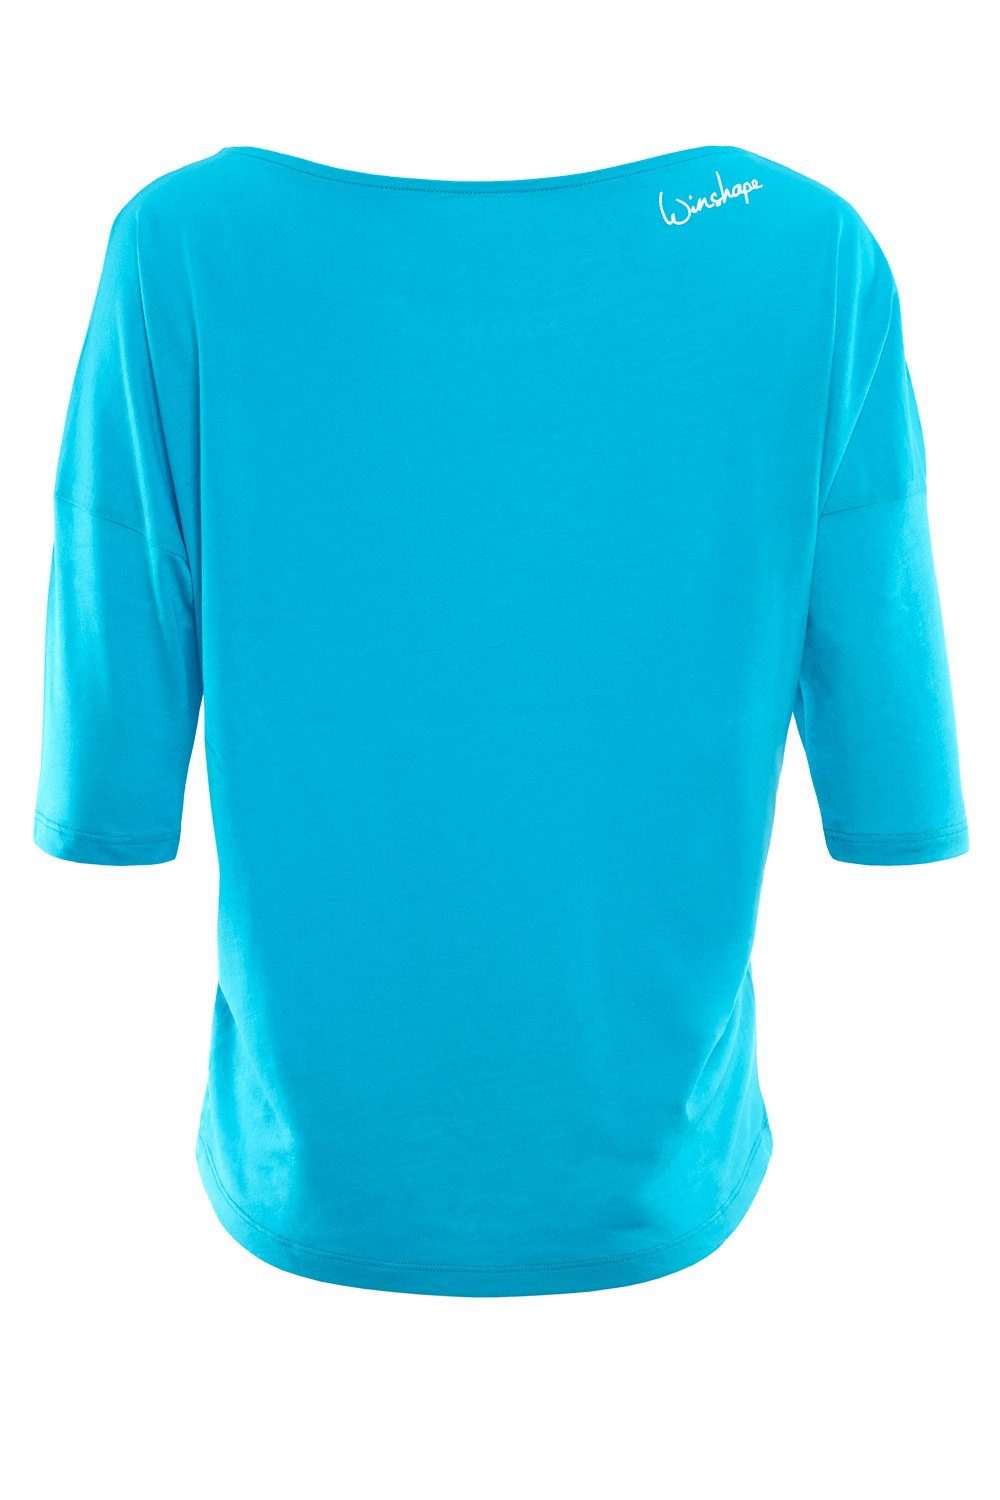 glitzer - mit ultra 3/4-Arm-Shirt Glitzer-Aufdruck blue weißem MCS001 sky leicht weiß Winshape